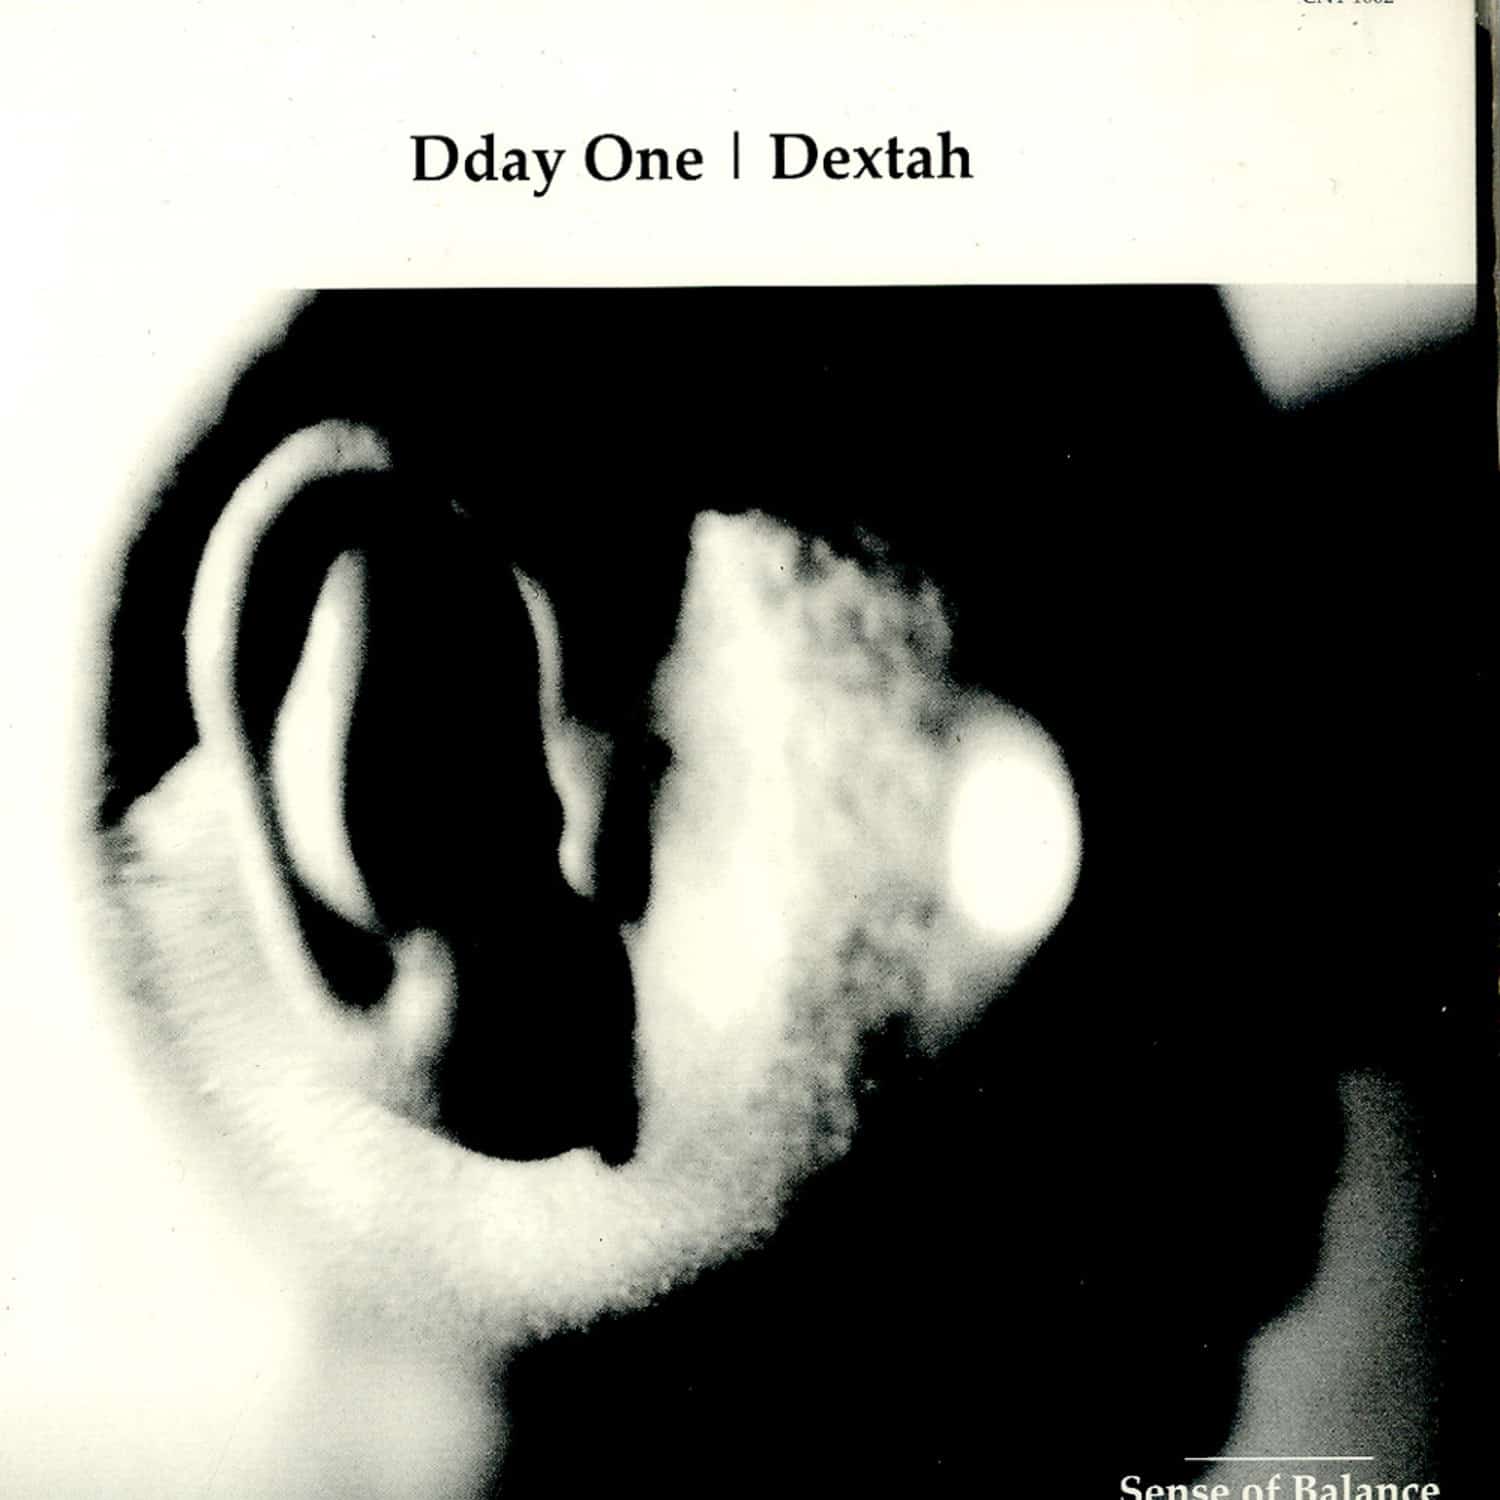 Dday One / Dextah - SENSE OF BALANCE / UNTITLED 541 